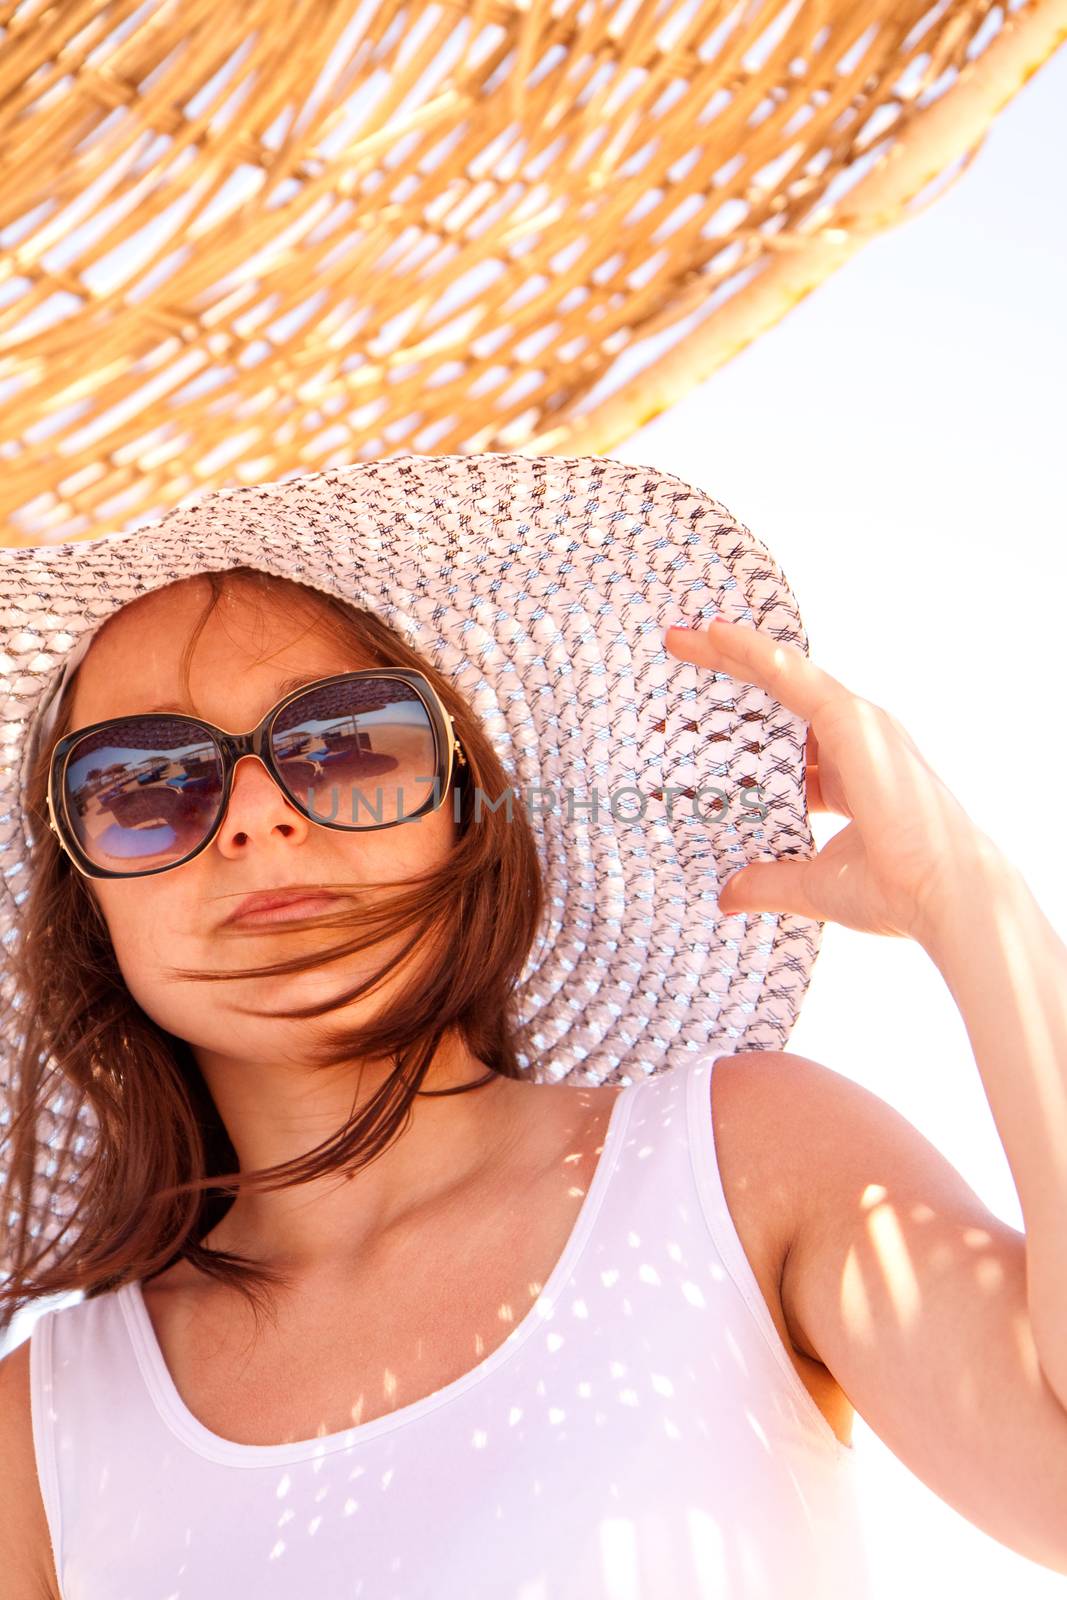 Girl in a hat in summer by Gbuglok